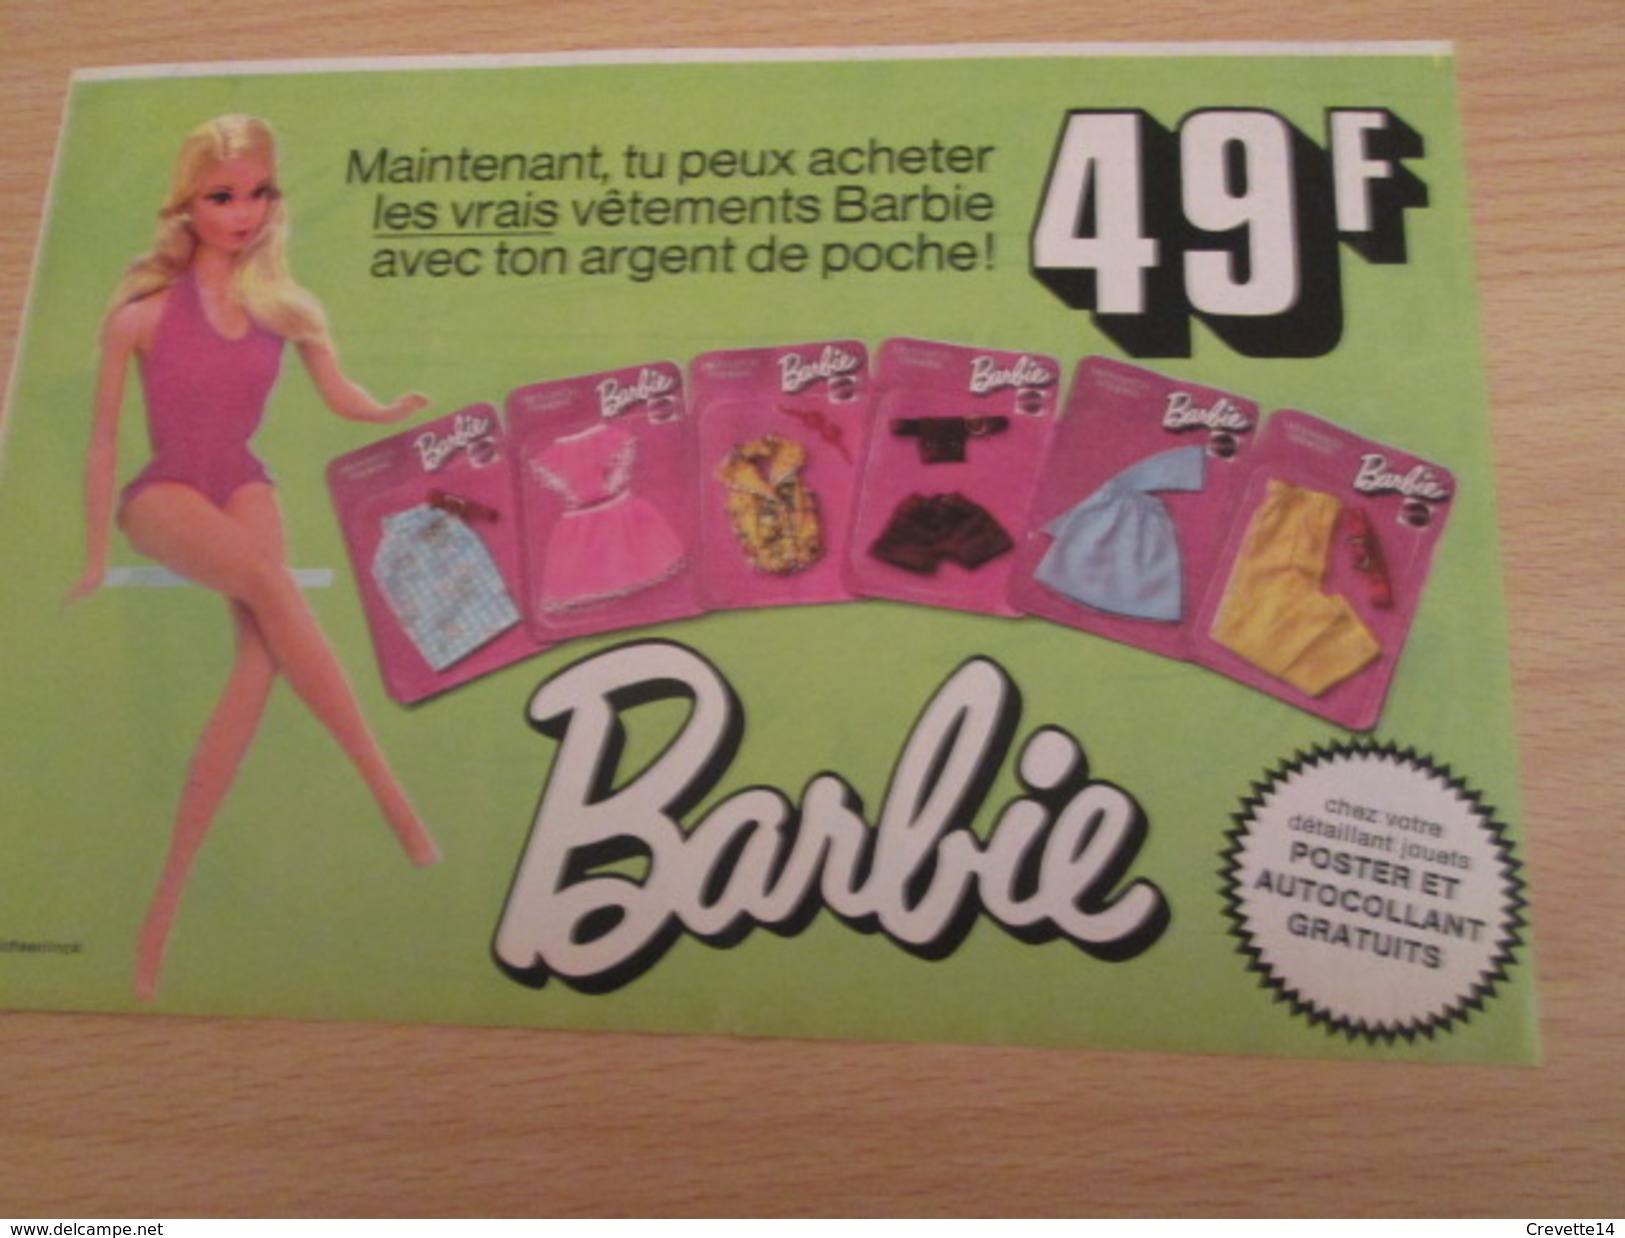 VETEMENTS A 49 F (belges) POUPEE BARBIE Pour  Collectionneurs ... PUBLICITE MATTEL Page De Revue Des Années 70 - Barbie